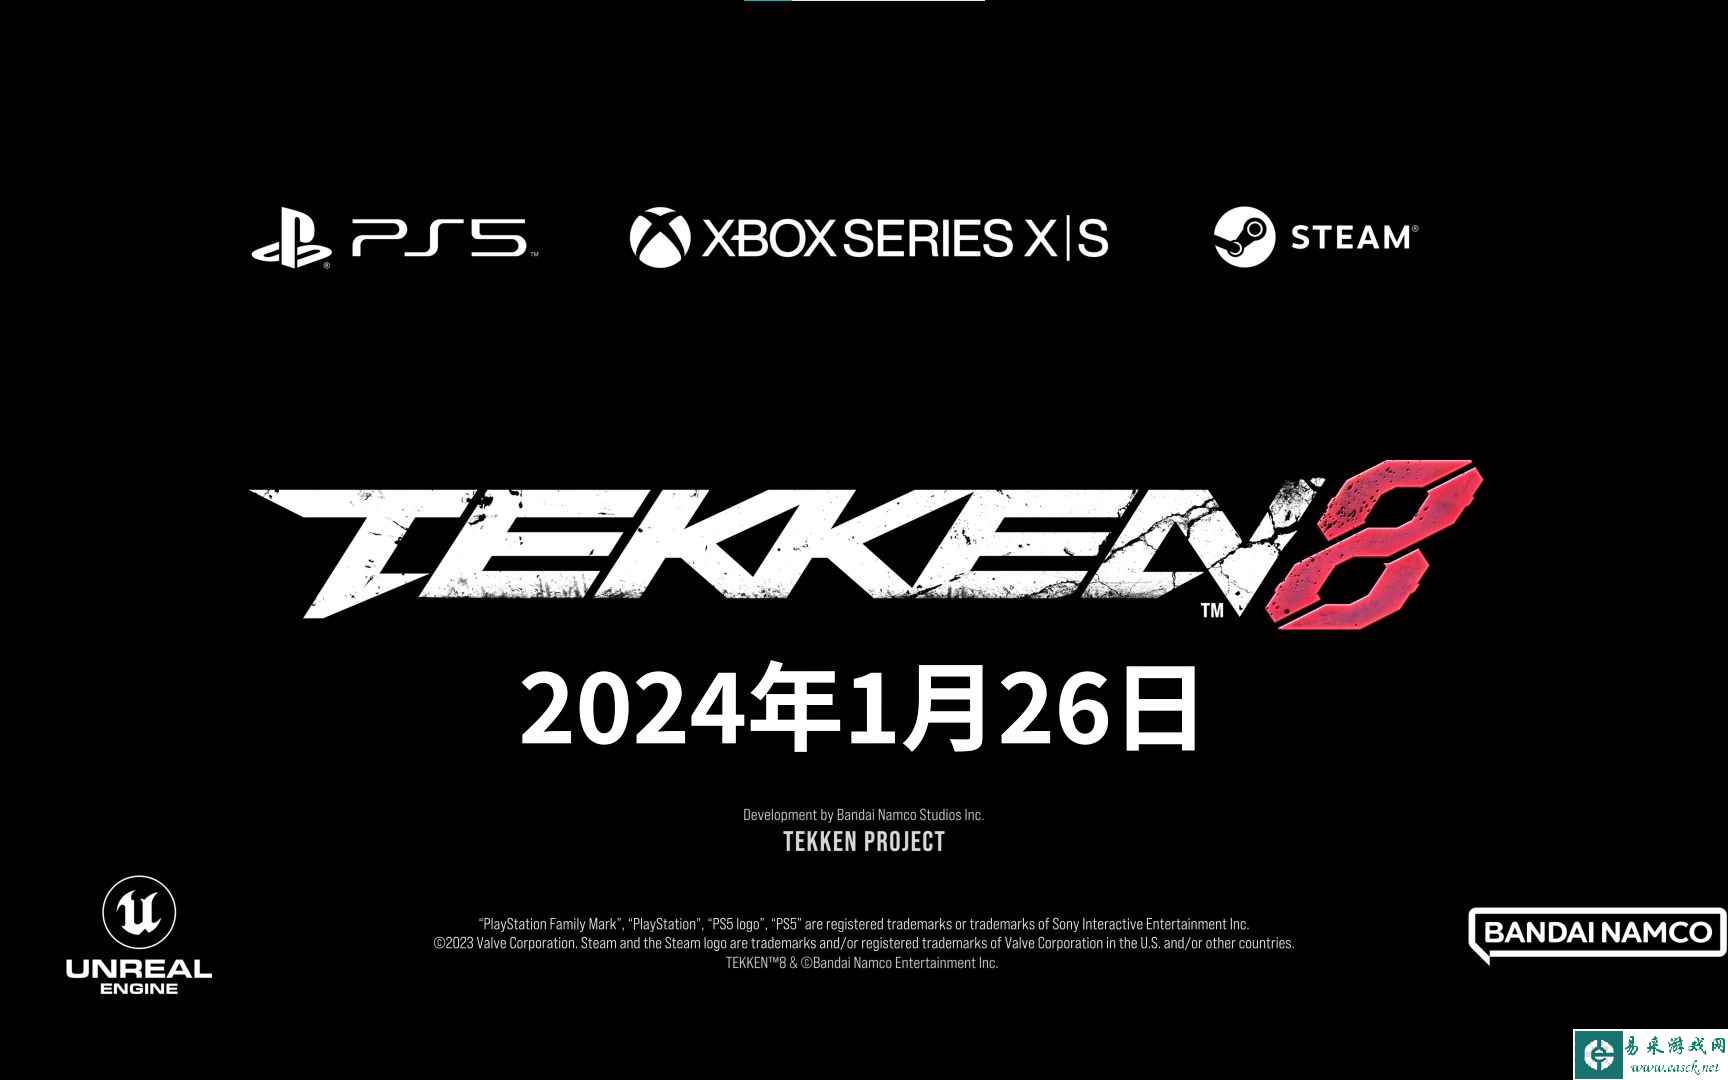 《铁拳8》发售日公开宣传视频 游戏于2024年1月26日上市